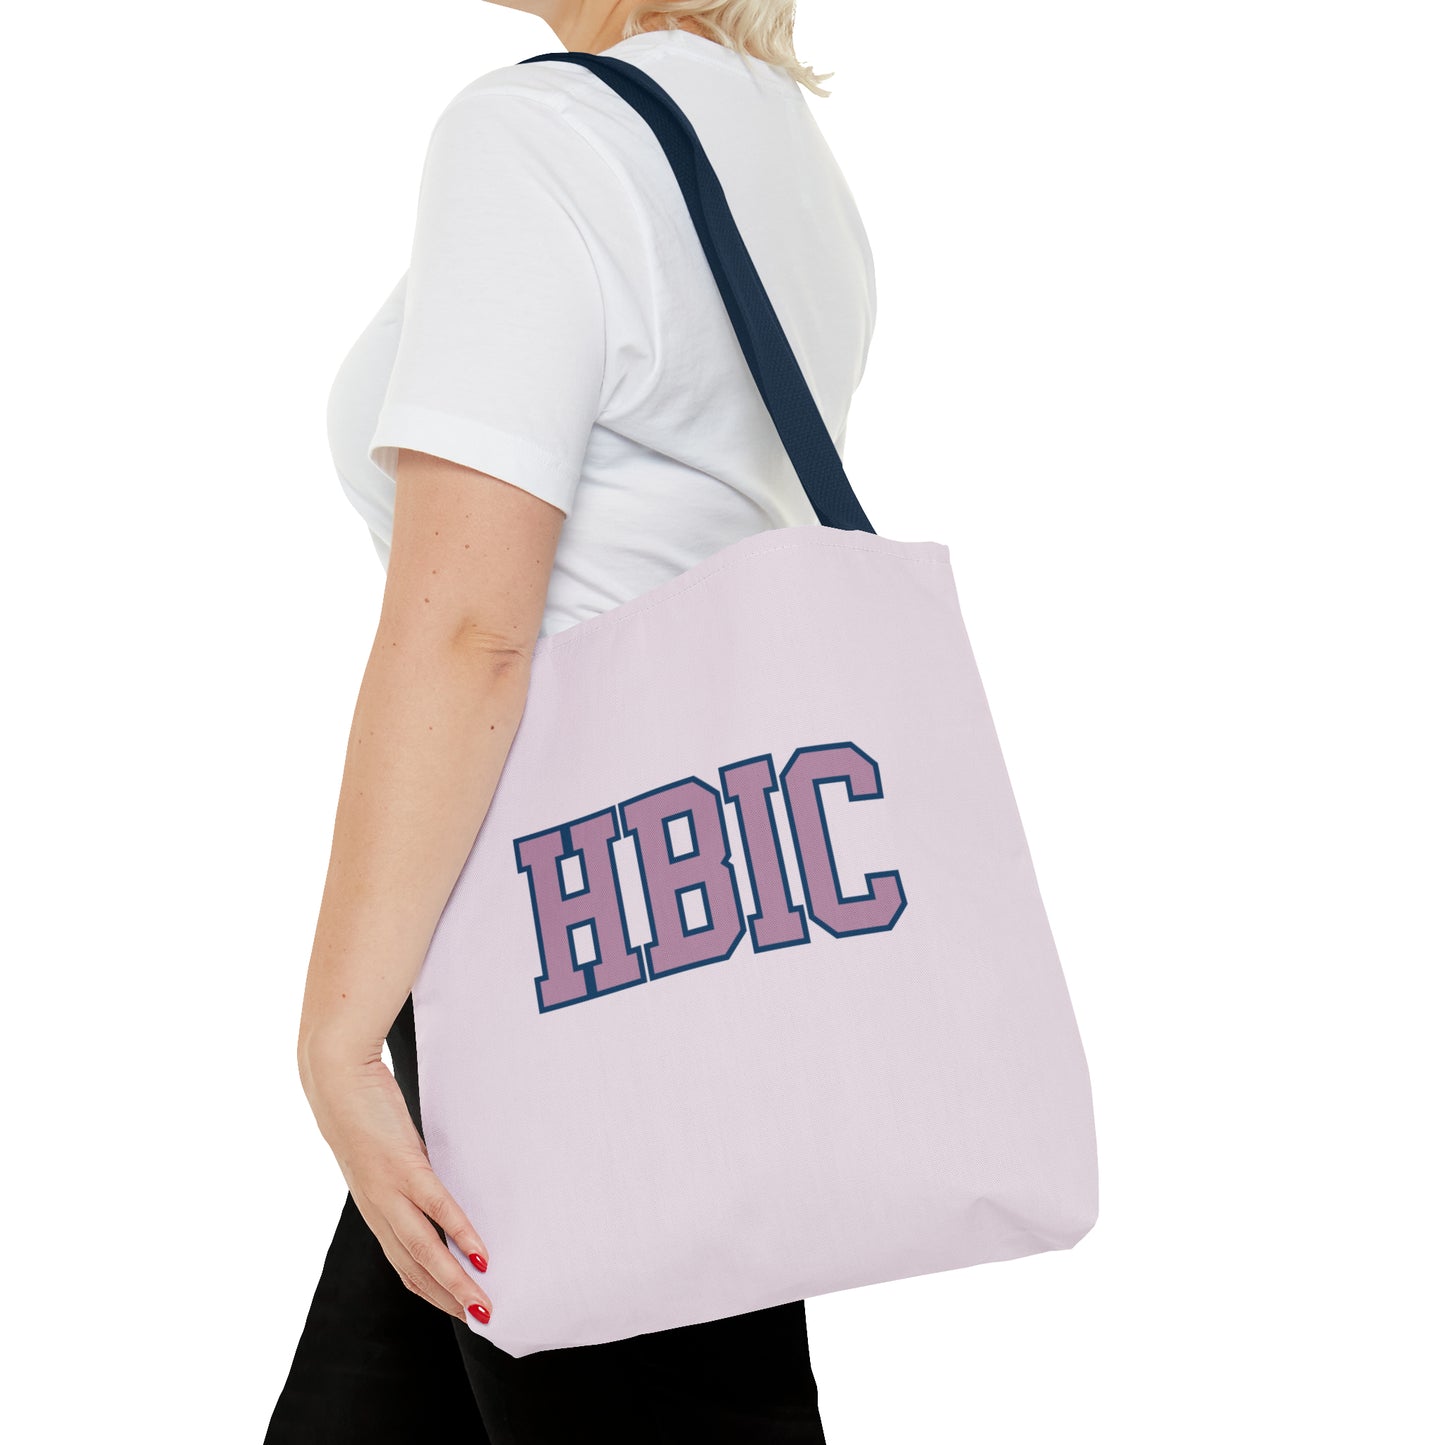 "HBIC" - Mom Tote Bag